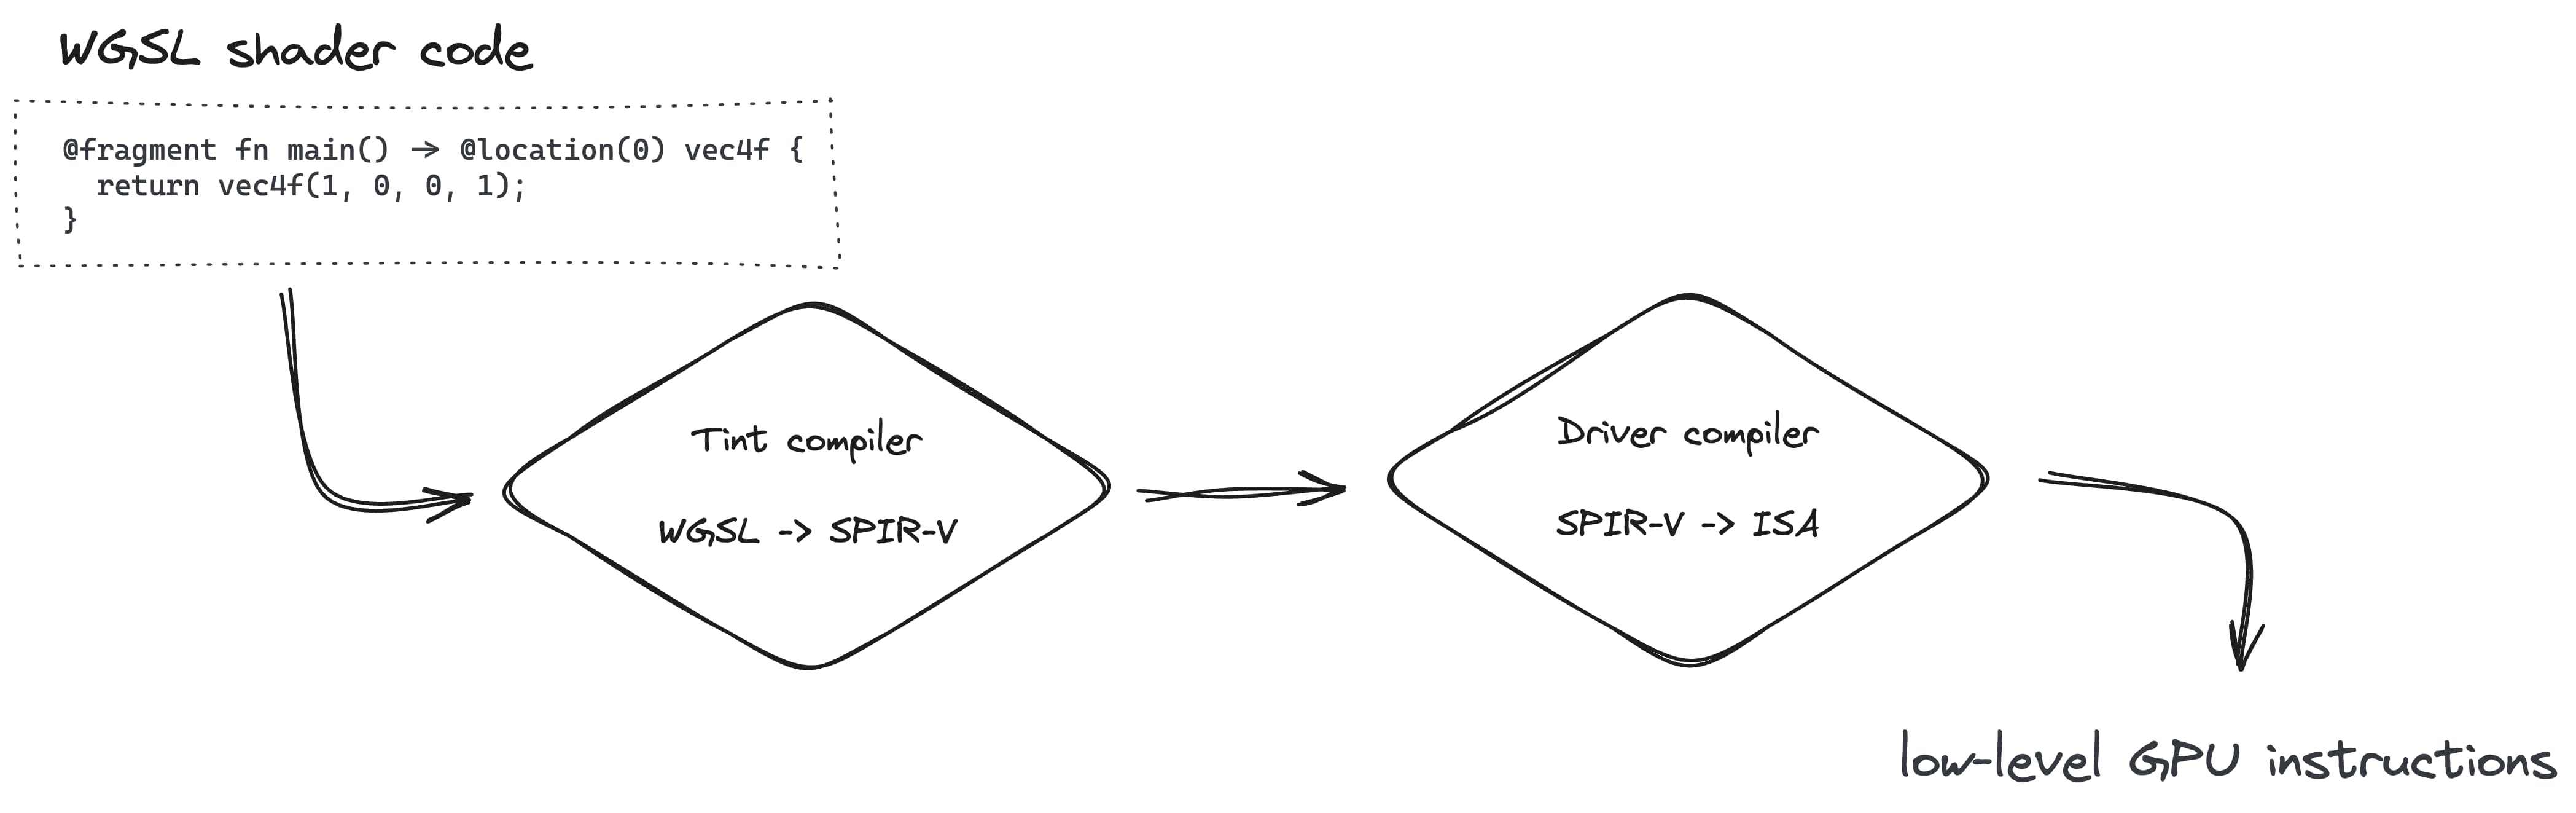 रेंडर होने वाली पाइपलाइन बनाने की प्रक्रिया में, Tint कंपाइलर की मदद से WGSL को SPIR-V में और फिर ड्राइवर कंपाइलर की मदद से ISA को ISA में बदलना शामिल है.